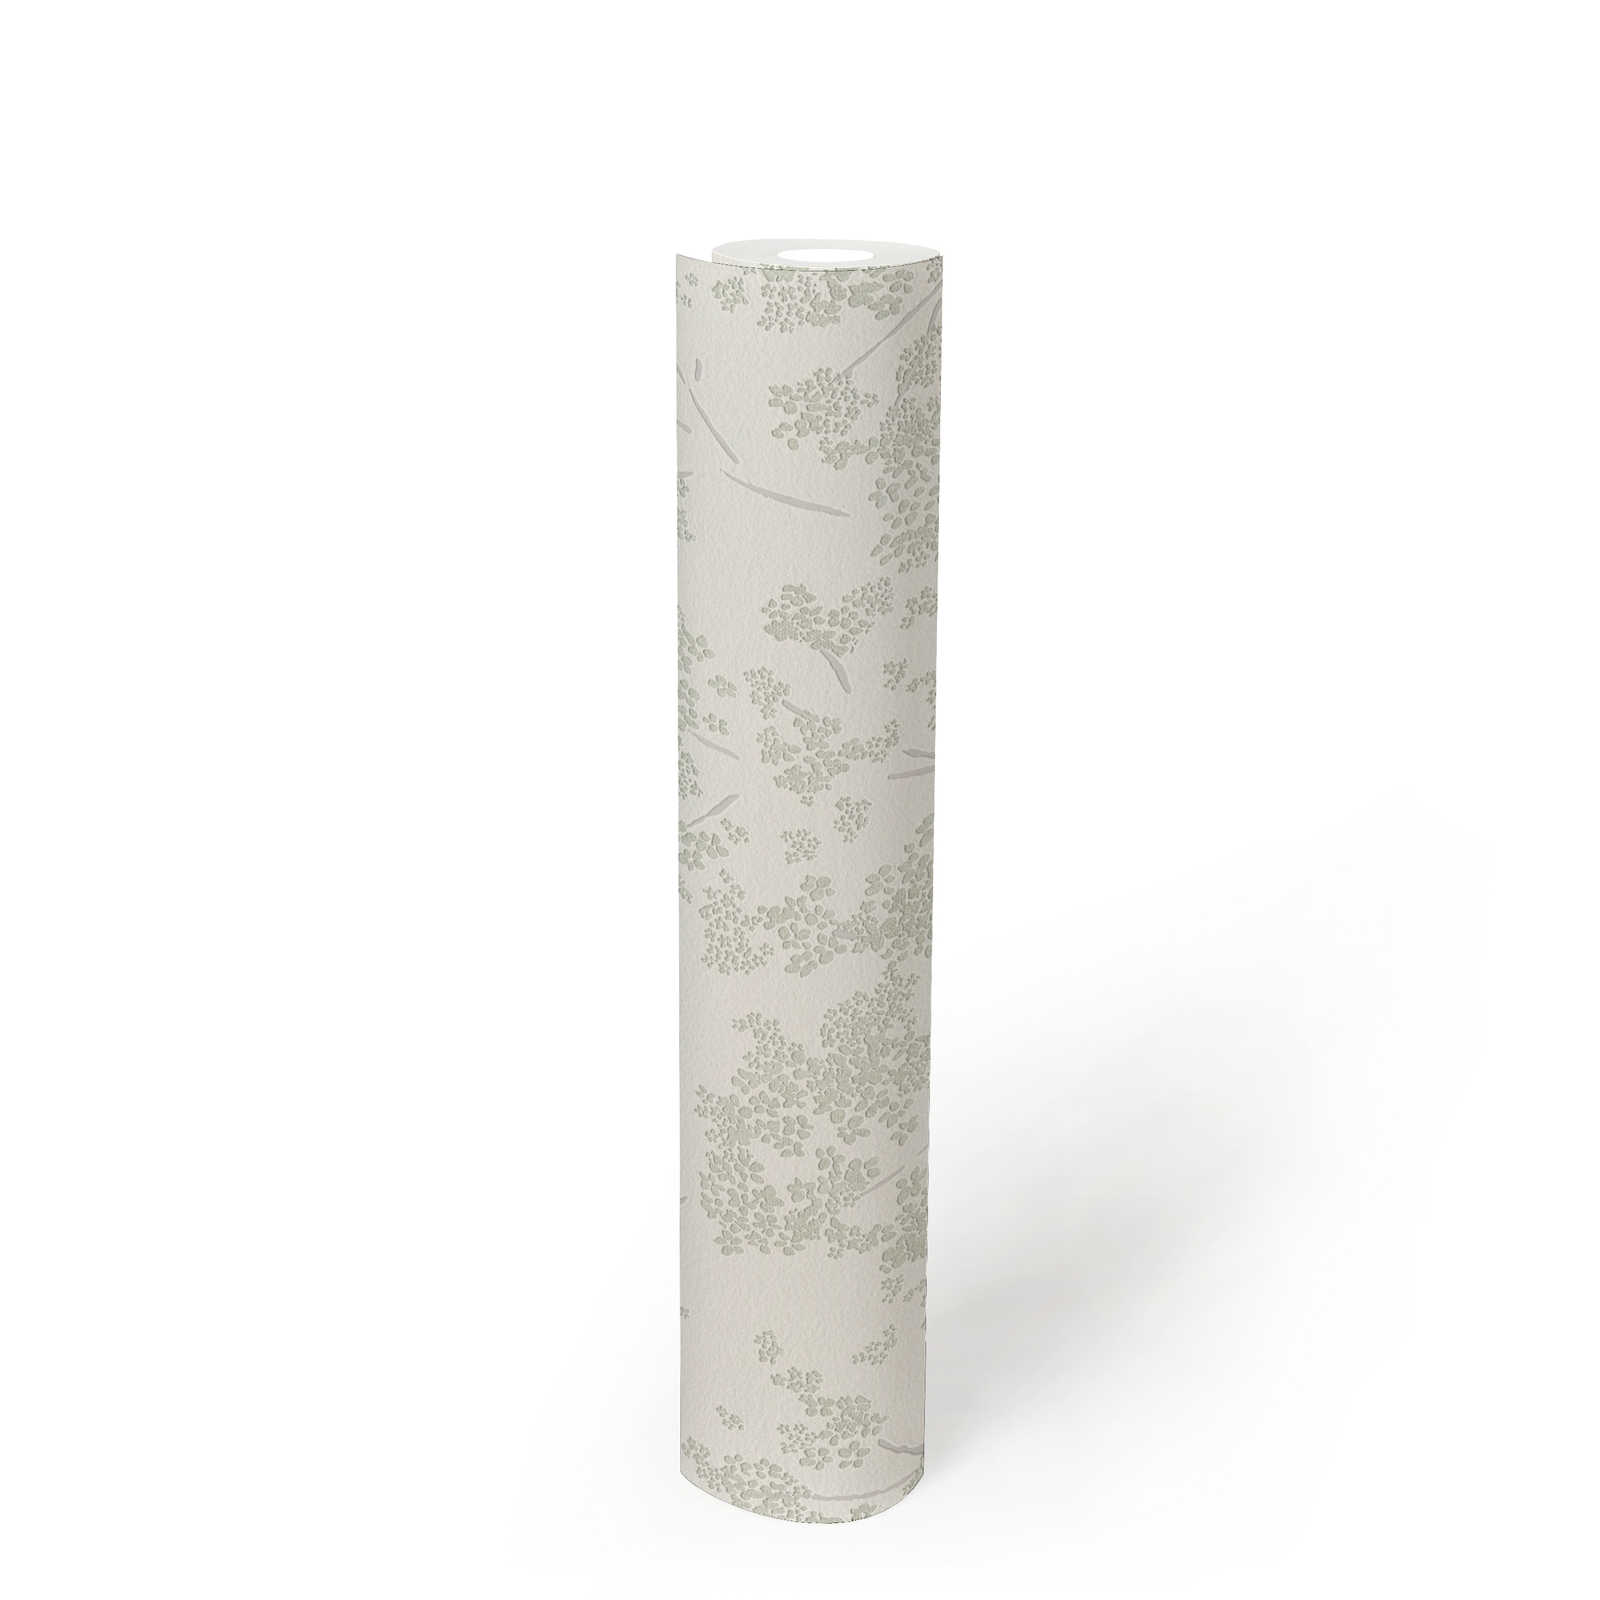             Vliestapete mit floraler Bemusterung – Weiß, Grün, Grau
        